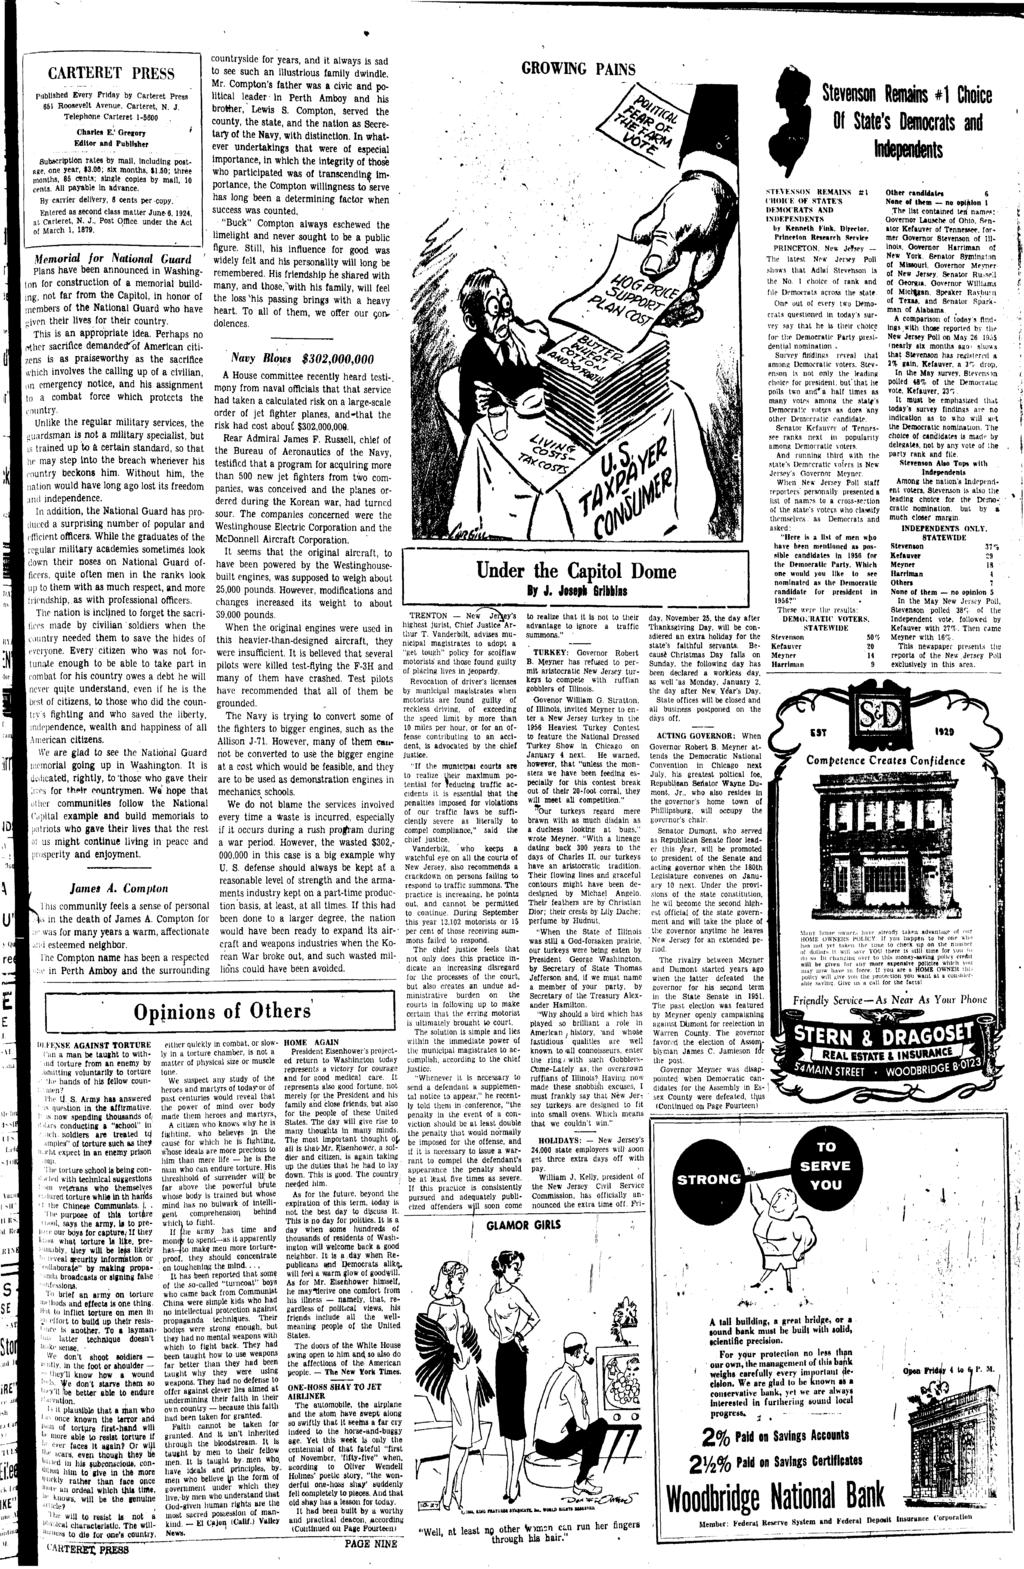 CARTERET PRESS publshed Every Frday by Carteret Press 651 Roosevelt Avenue, Carteret, N. J. Telephone Carteret 1-5 Charles E.